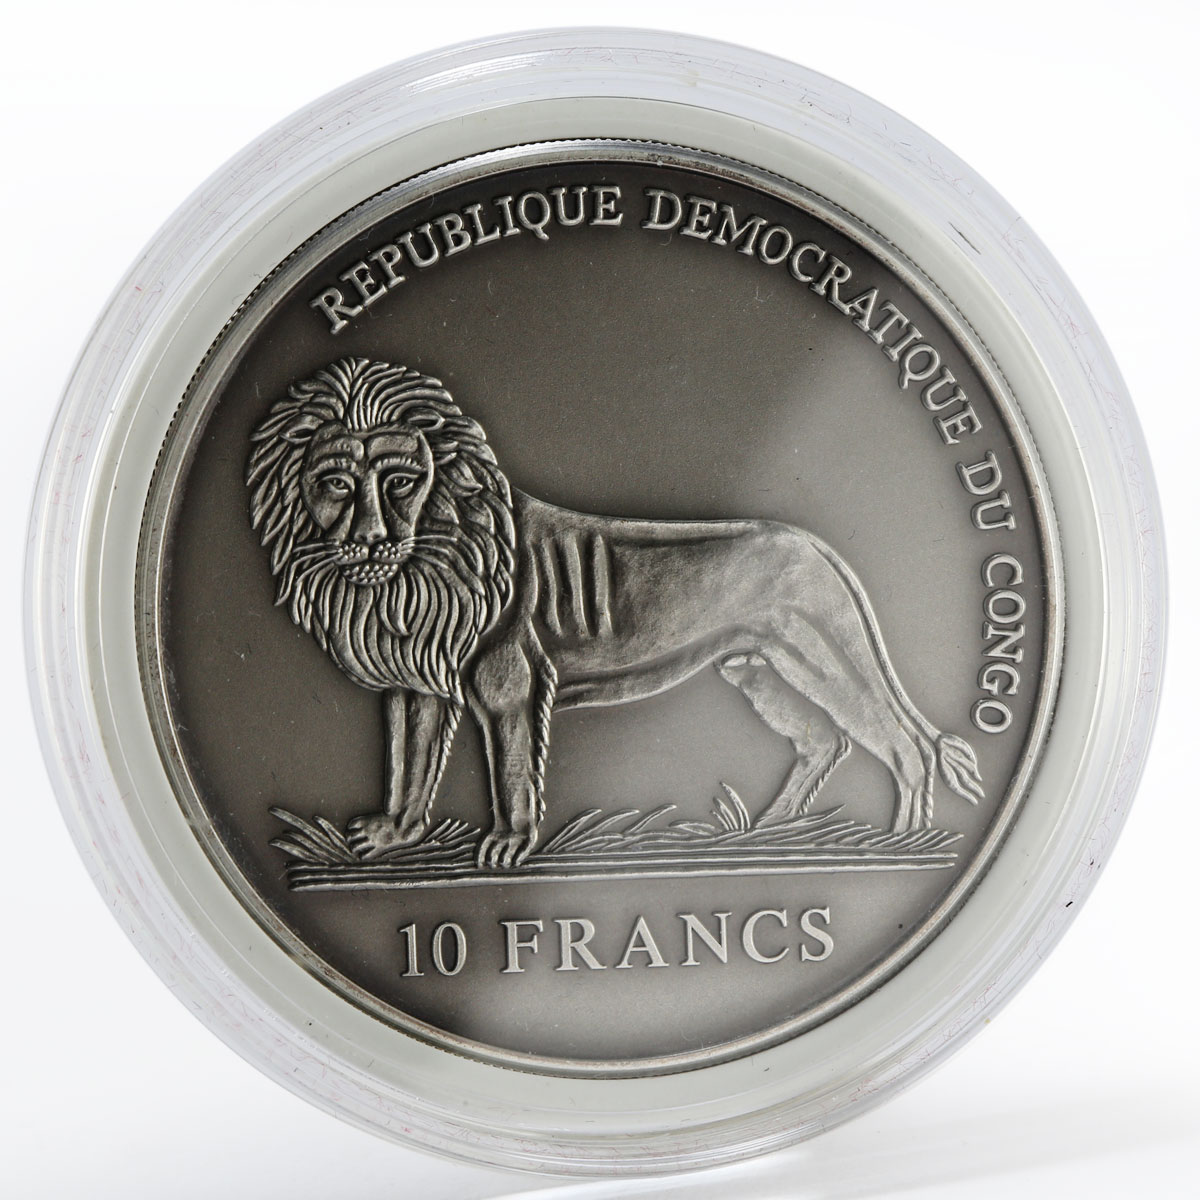 Congo 10 francs Sailor calendar for 50 years time anchor marine silver coin 2005